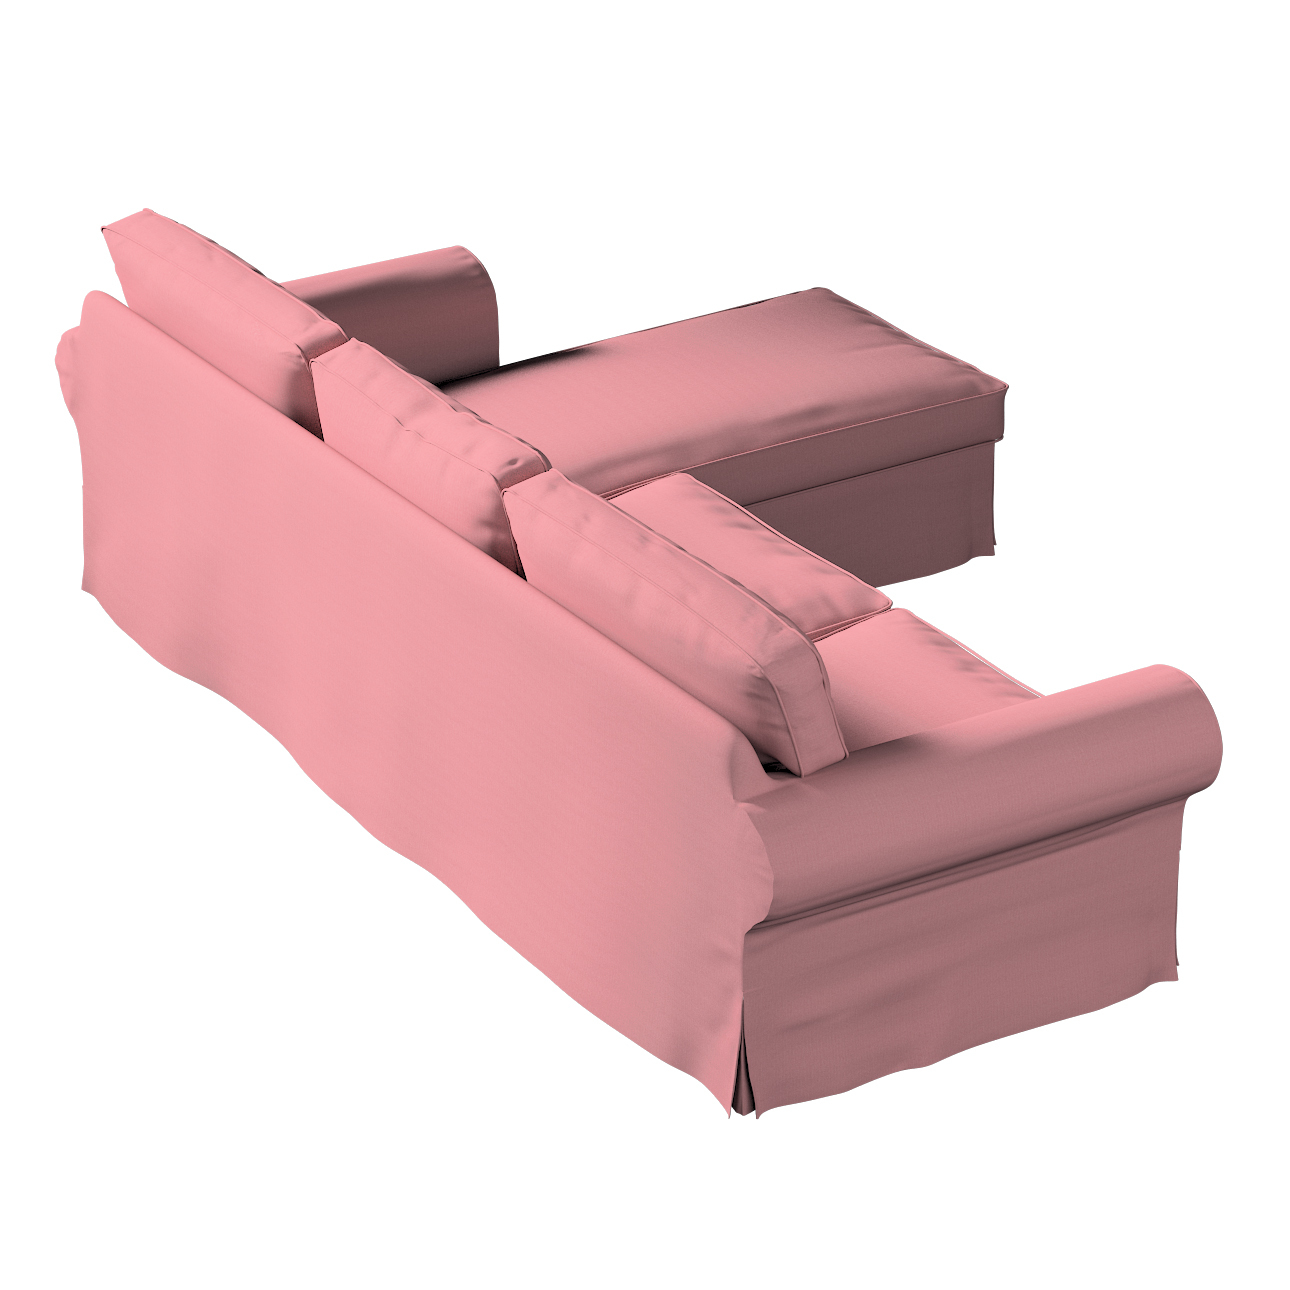 Bezug für Ektorp 2-Sitzer Sofa mit Recamiere, altrosa, Ektorp 2-Sitzer Sofa günstig online kaufen